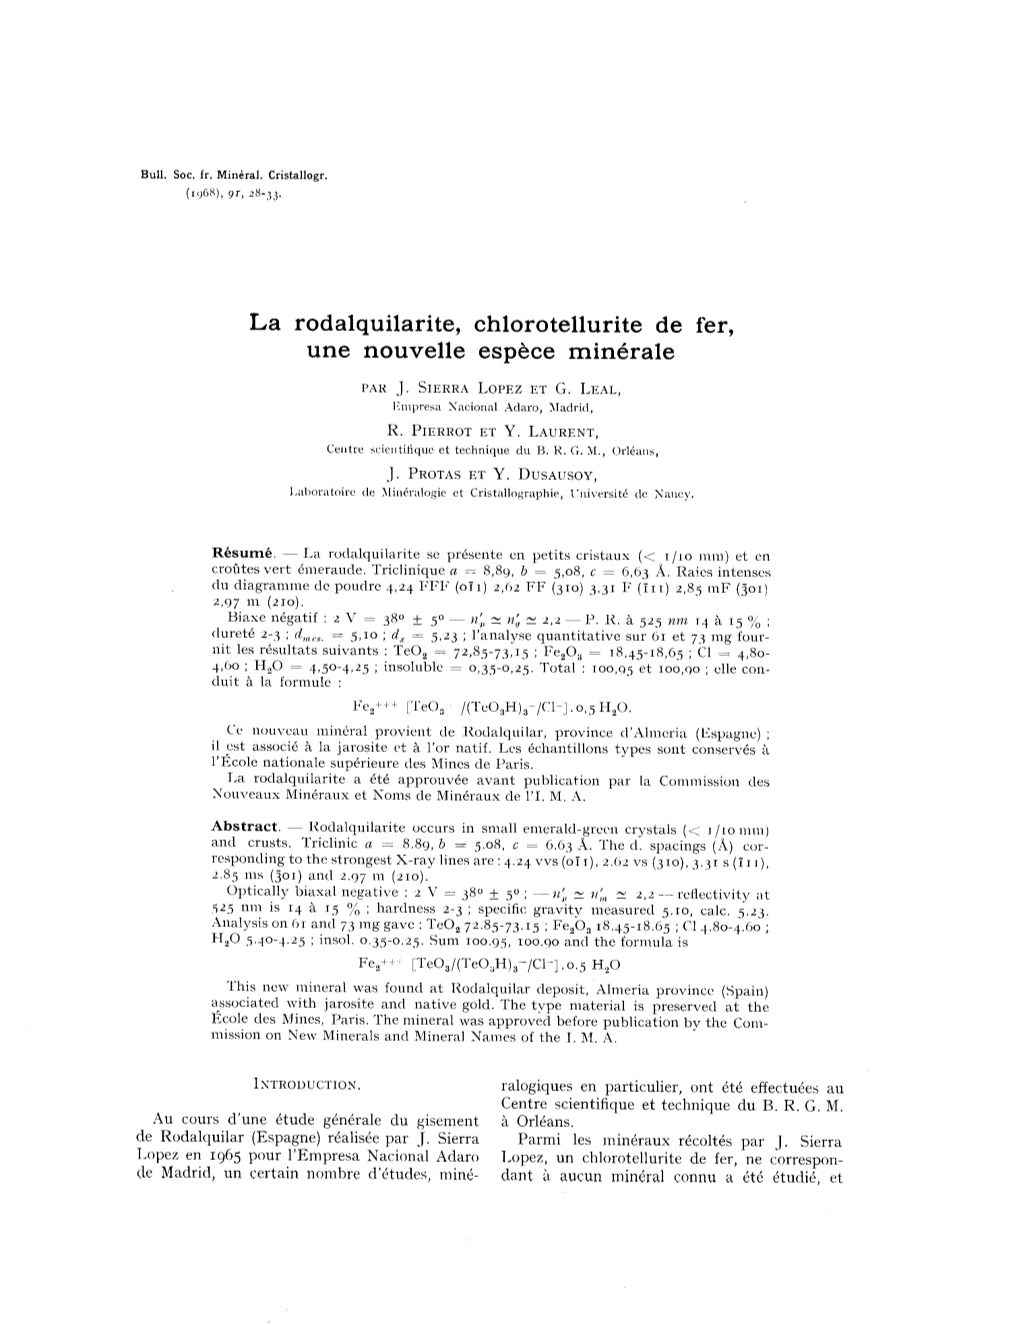 La Rodalquilarite, Chlorotellurite De Fer, Une Nouvelle Espèce Minérale